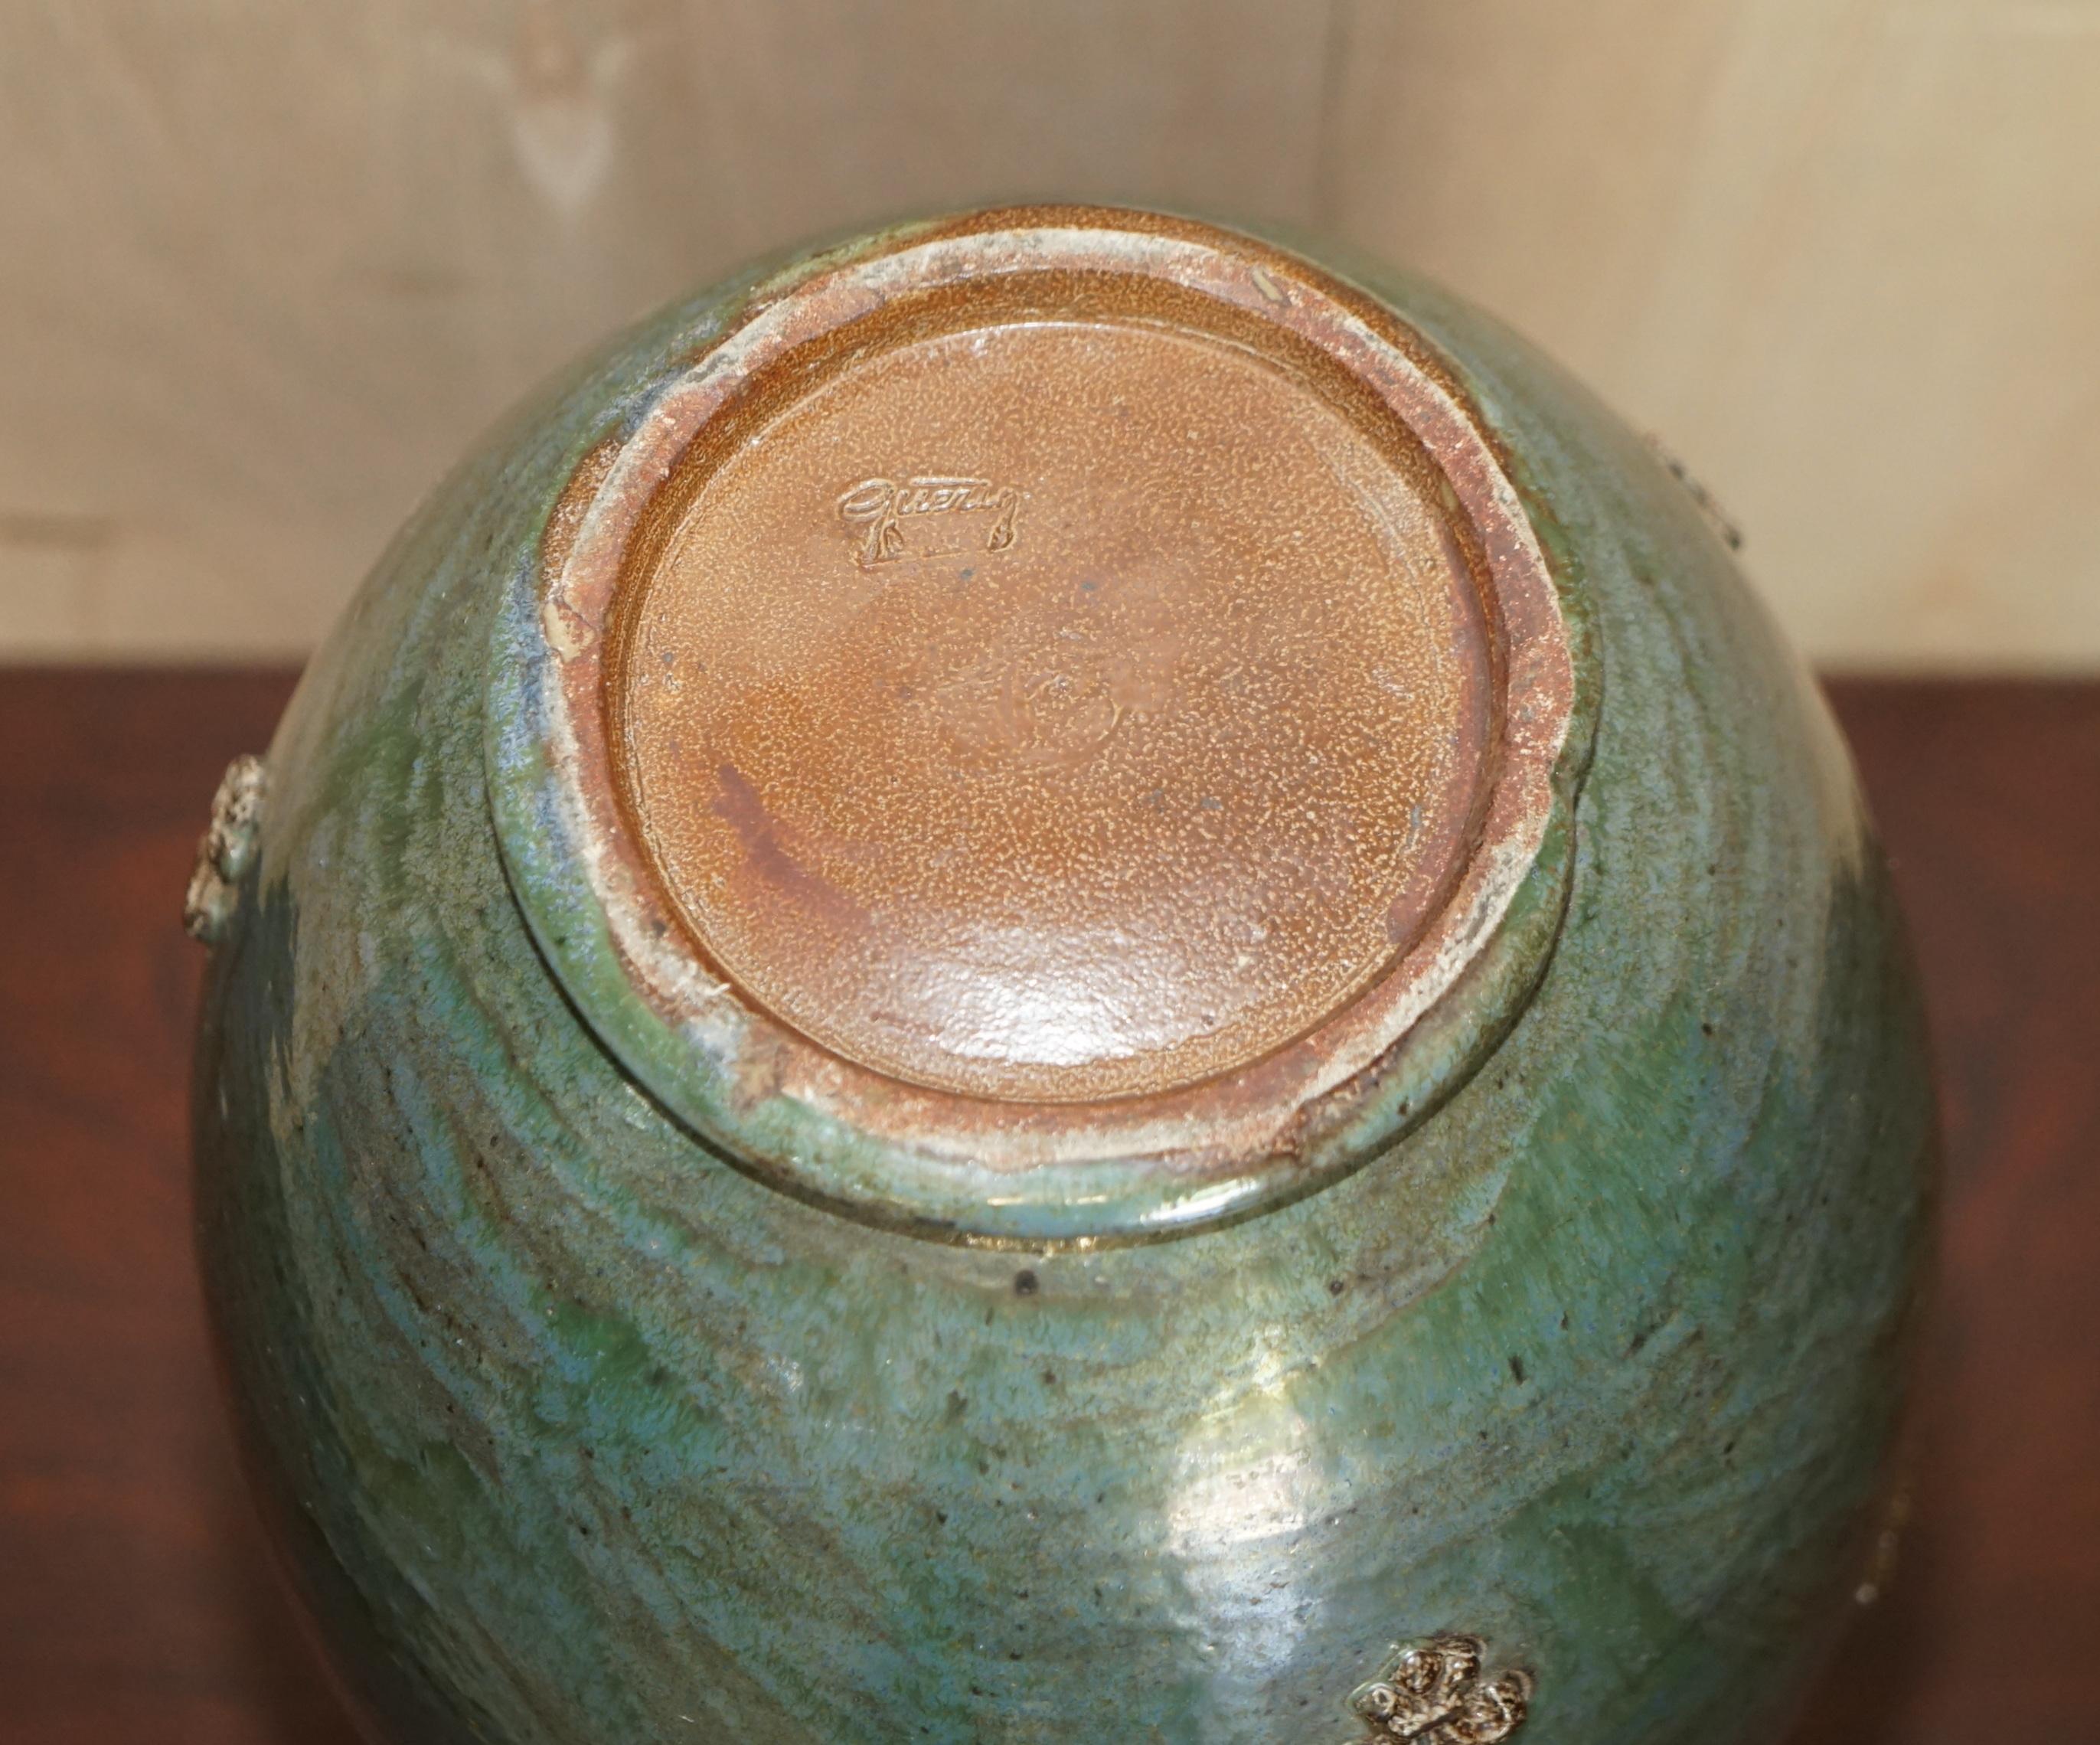 Nous sommes ravis d'offrir à la vente ce pot en céramique Roger Guerin unique, entièrement signé, original, datant de 1930, de grandes proportions avec une décoration Fleur de Lis 

Roger Guèrin (1896-1954) était l'un des principaux céramistes